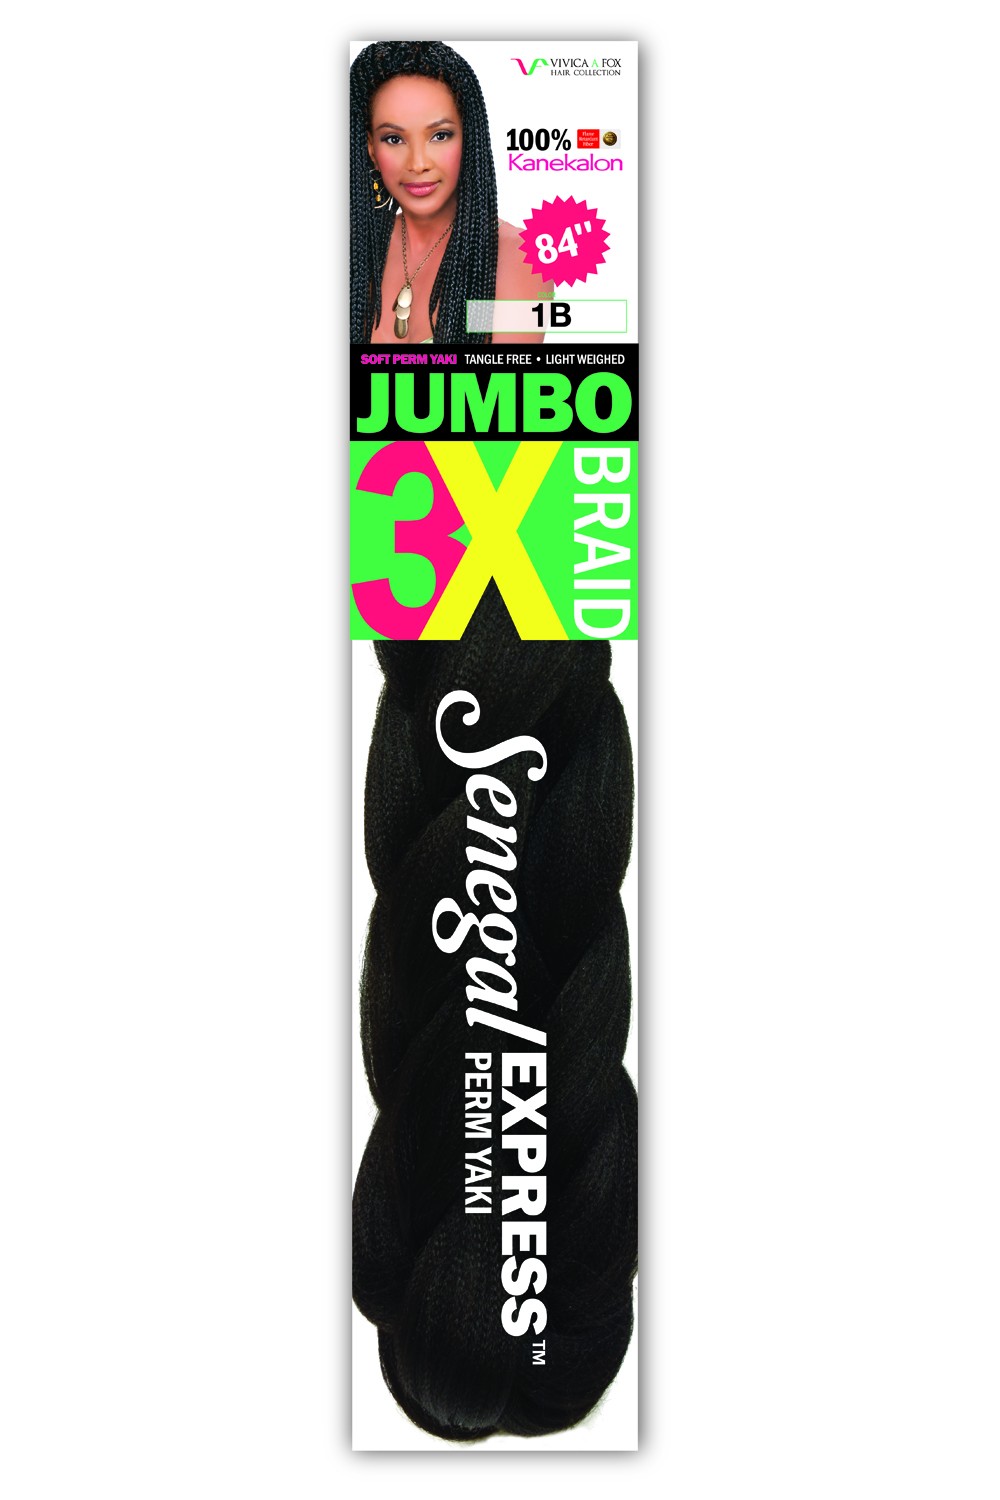 Jumbo 3 X är extra långa för braids,tvist och croshet